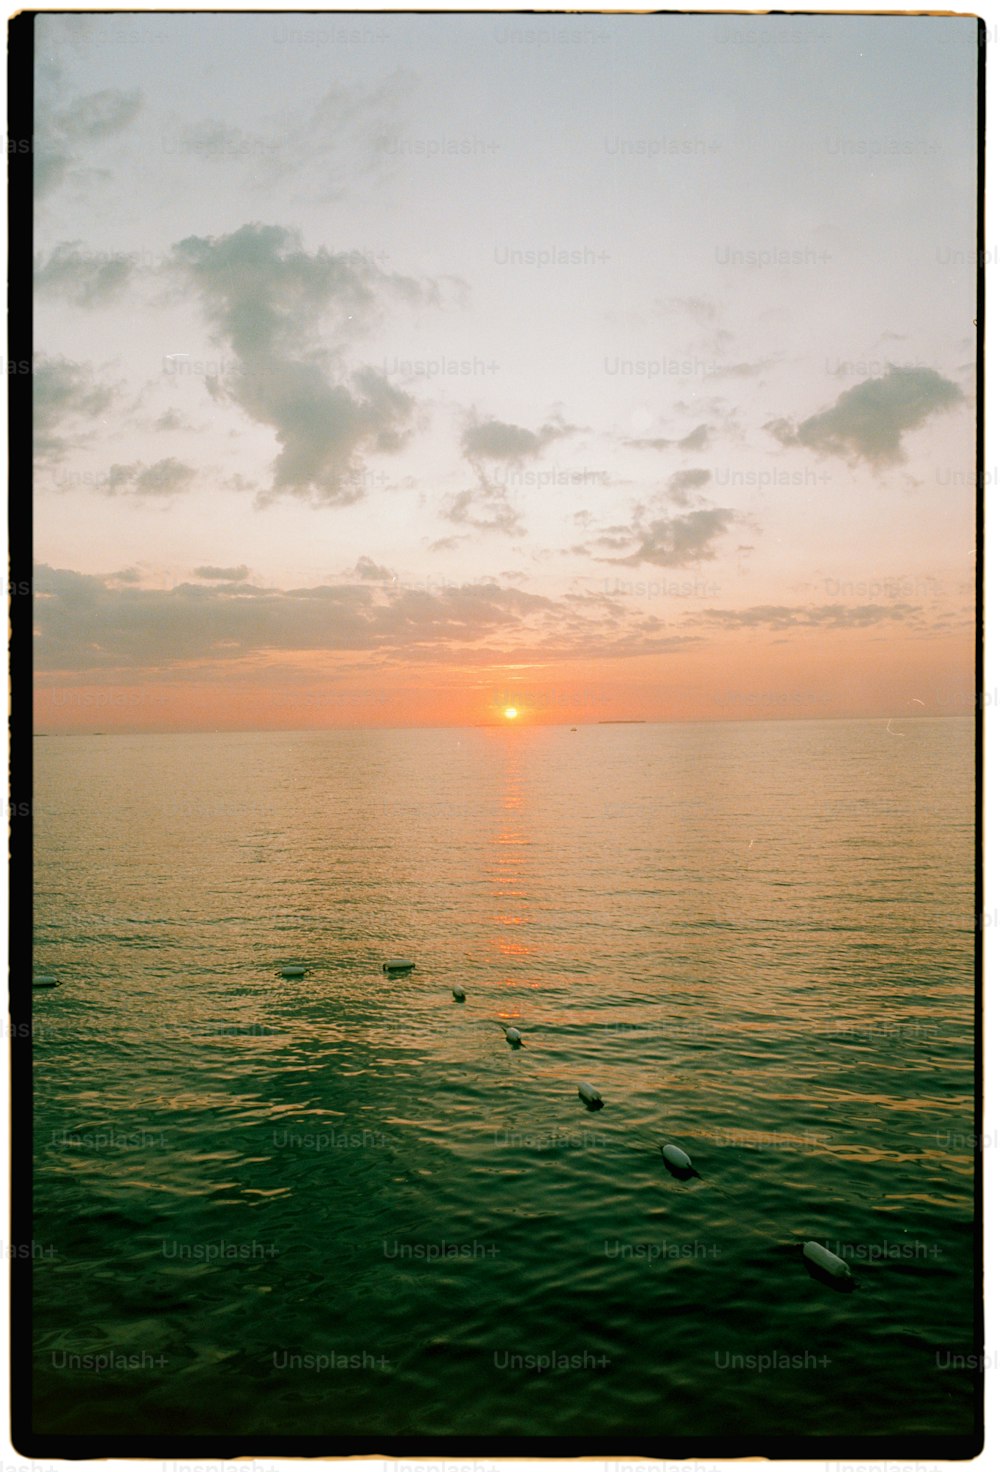 Le soleil se couche sur l’océan avec des canards nageant dans l’eau